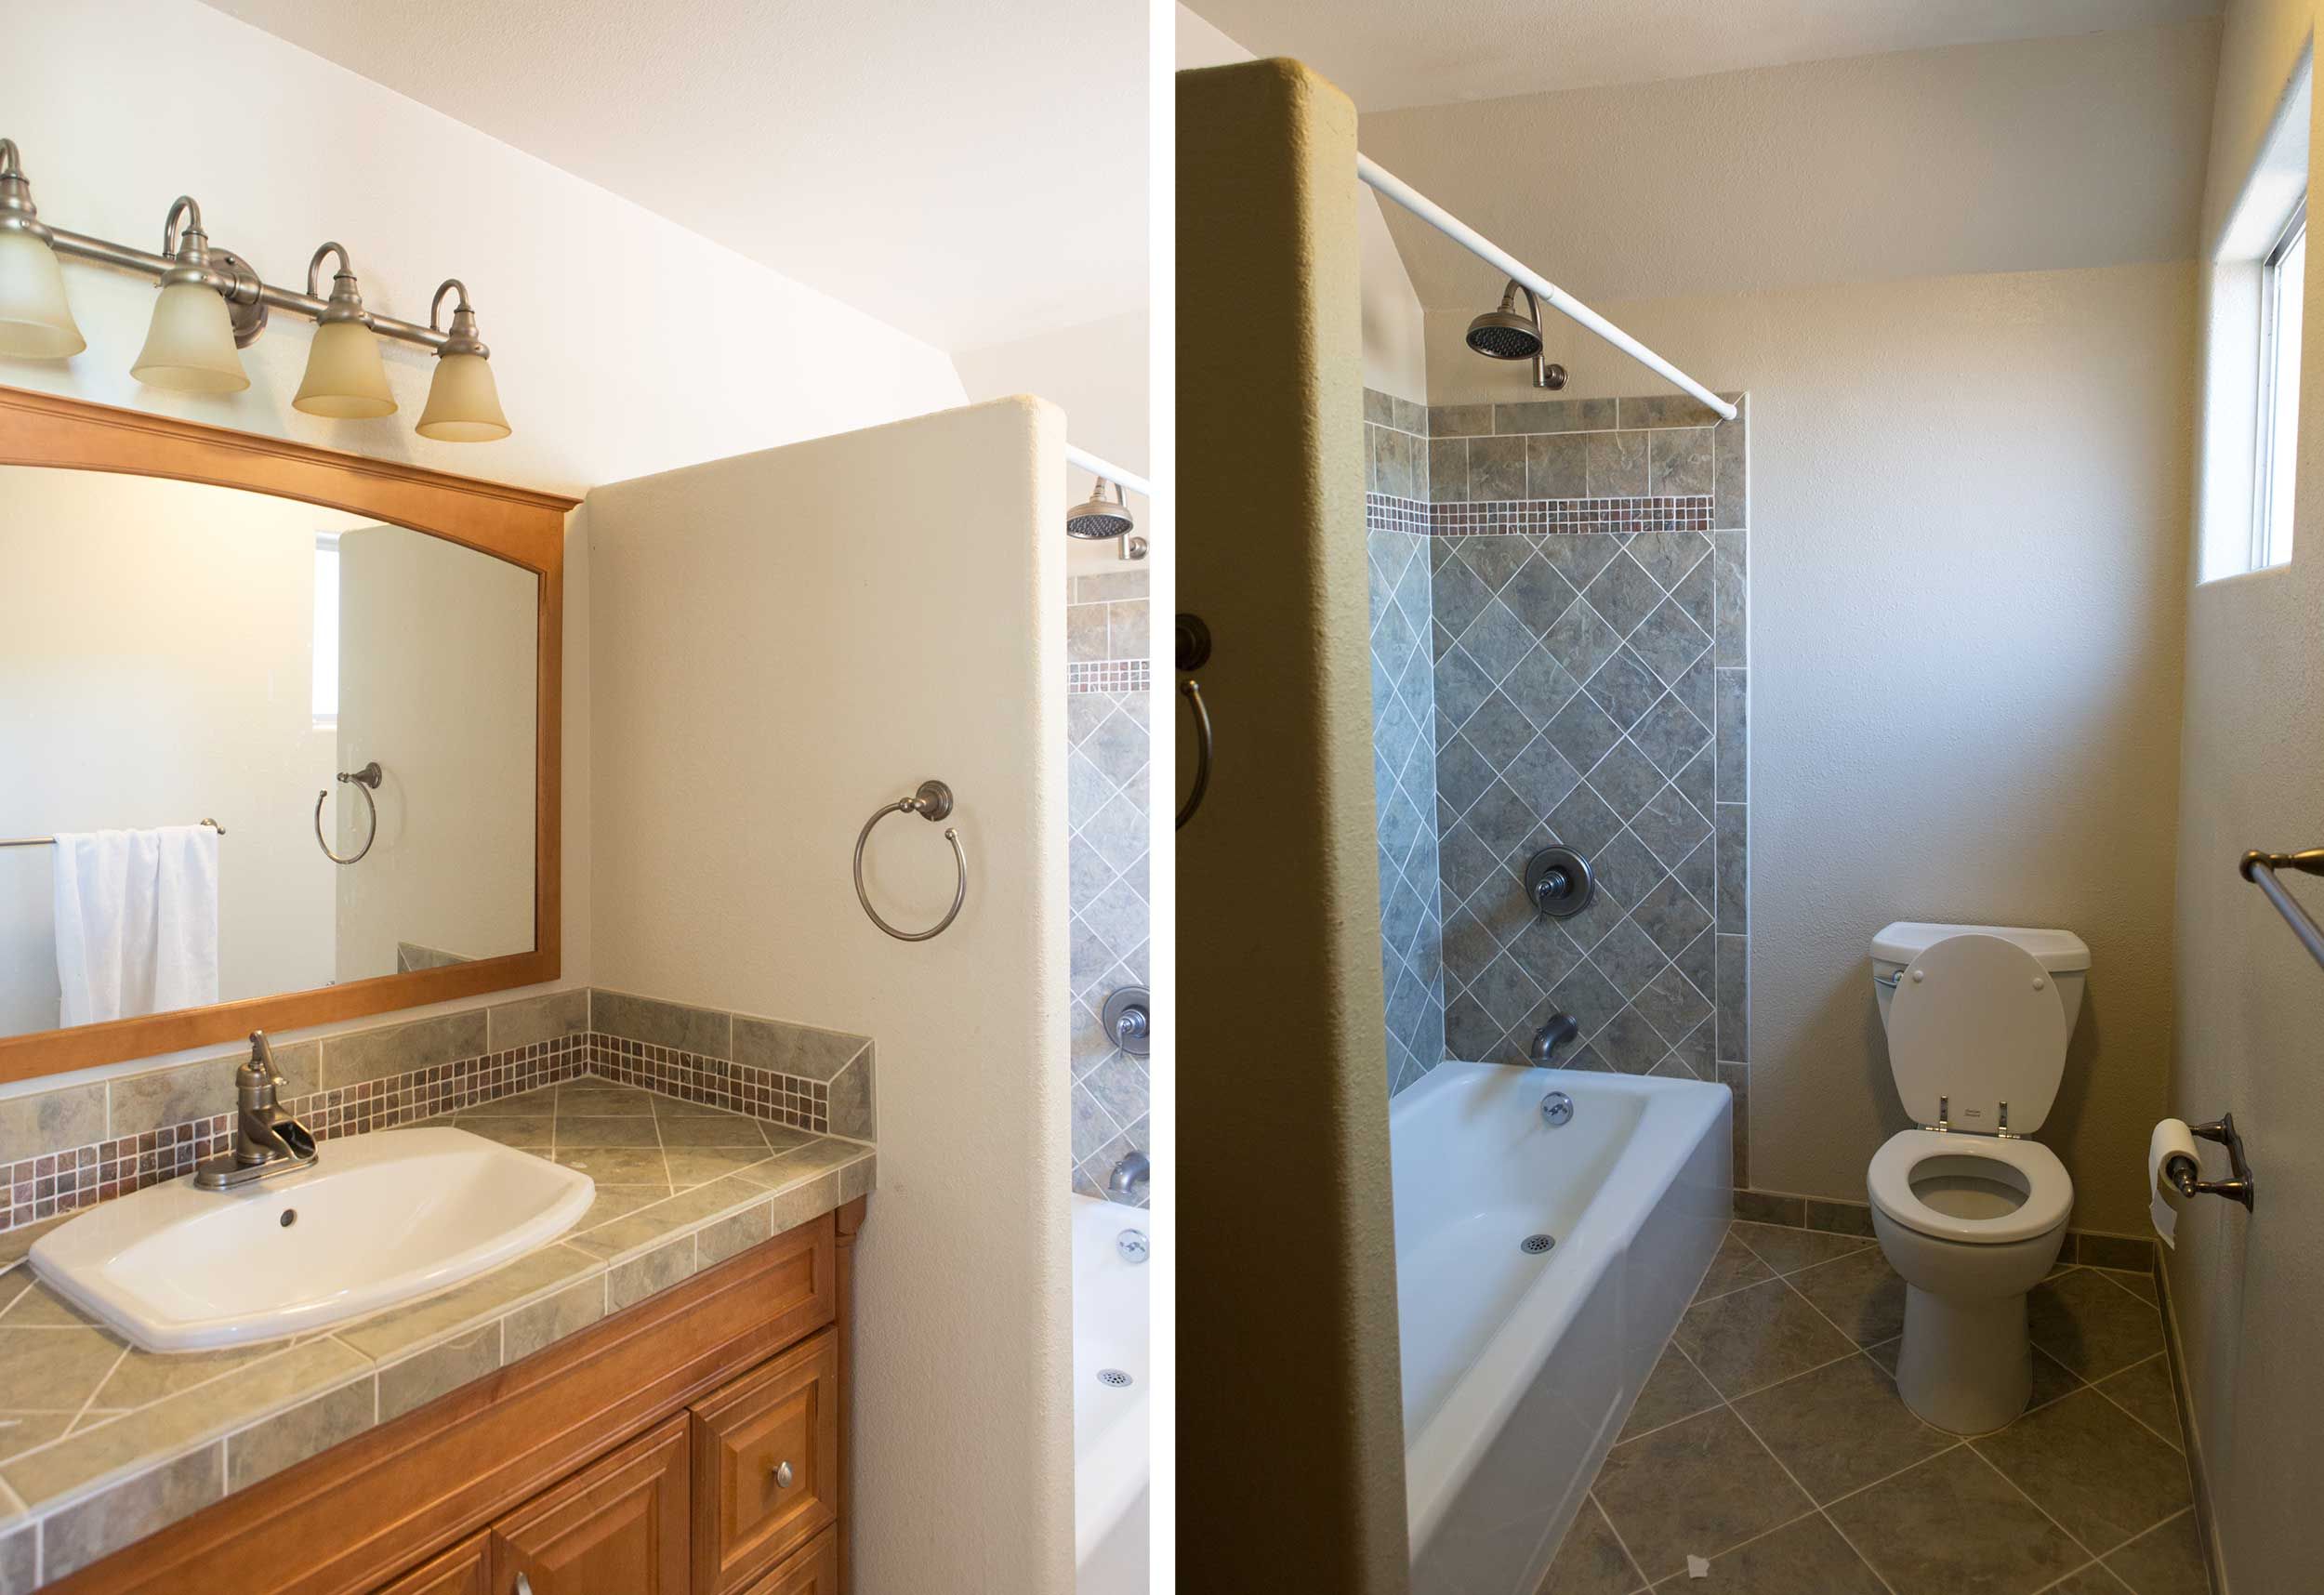 These 17 Stylish Bathroom Remodel Ideas